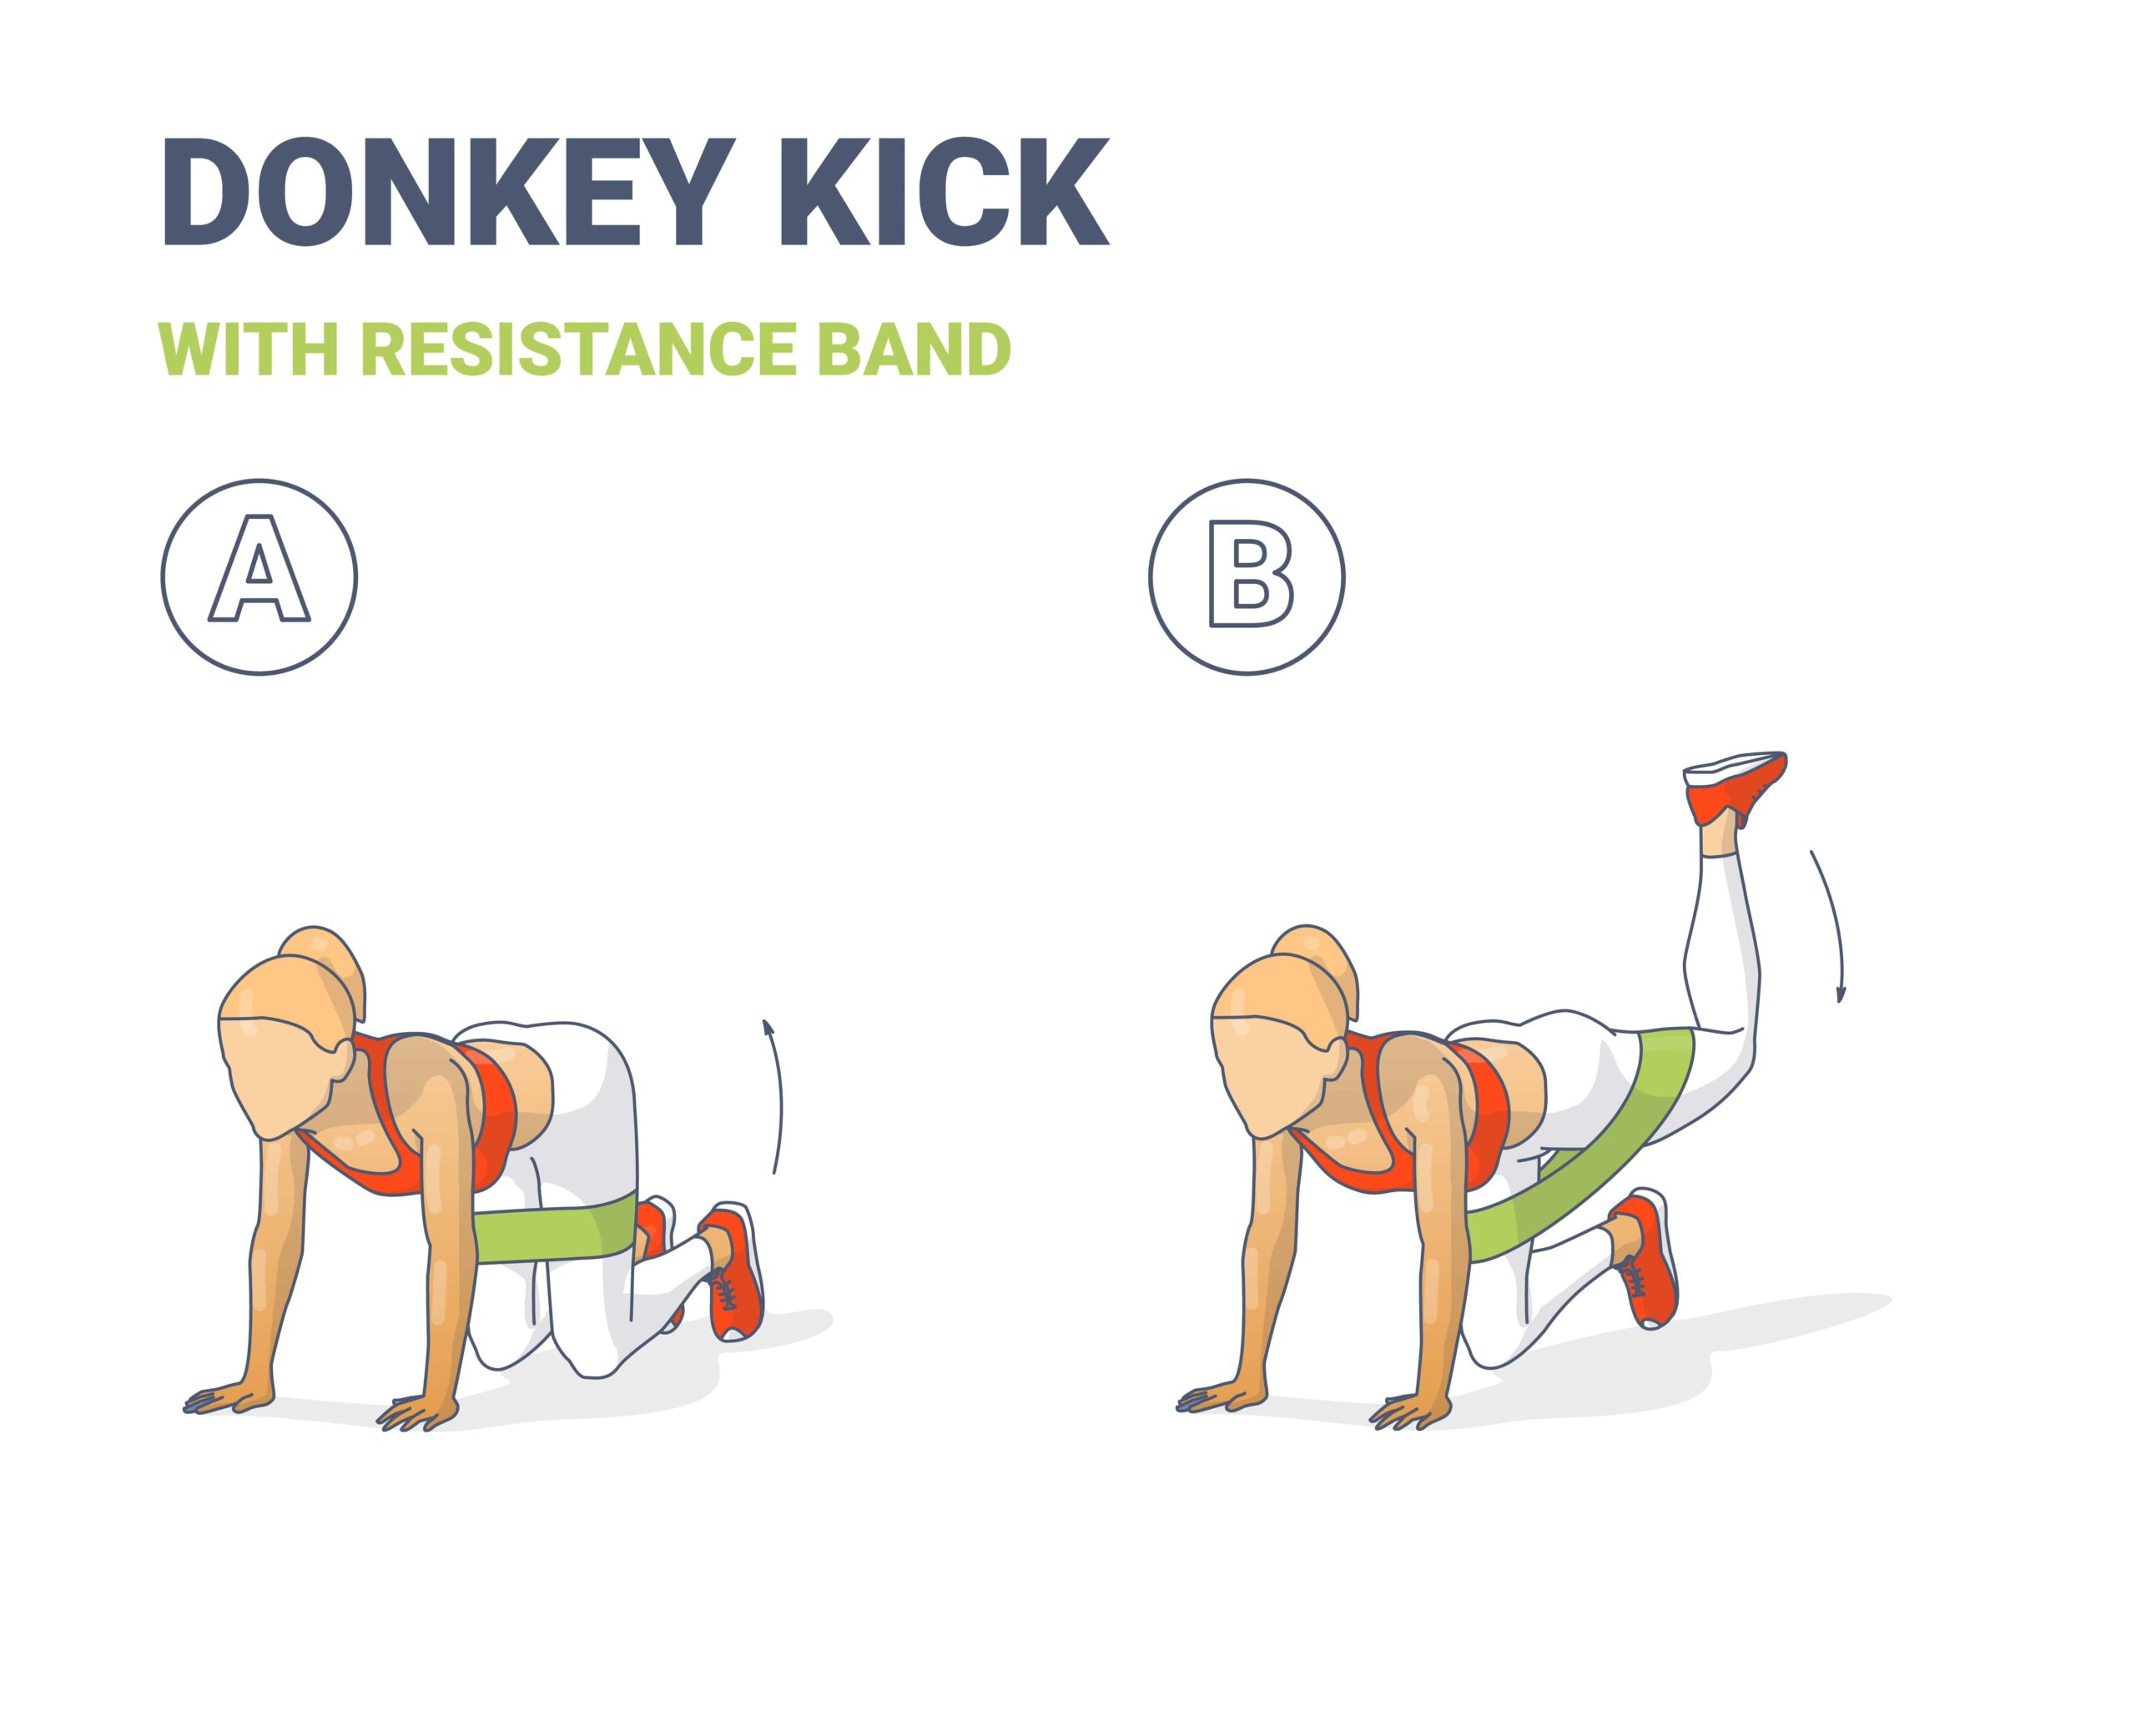 Exercice n°1 : Les donkey kicks